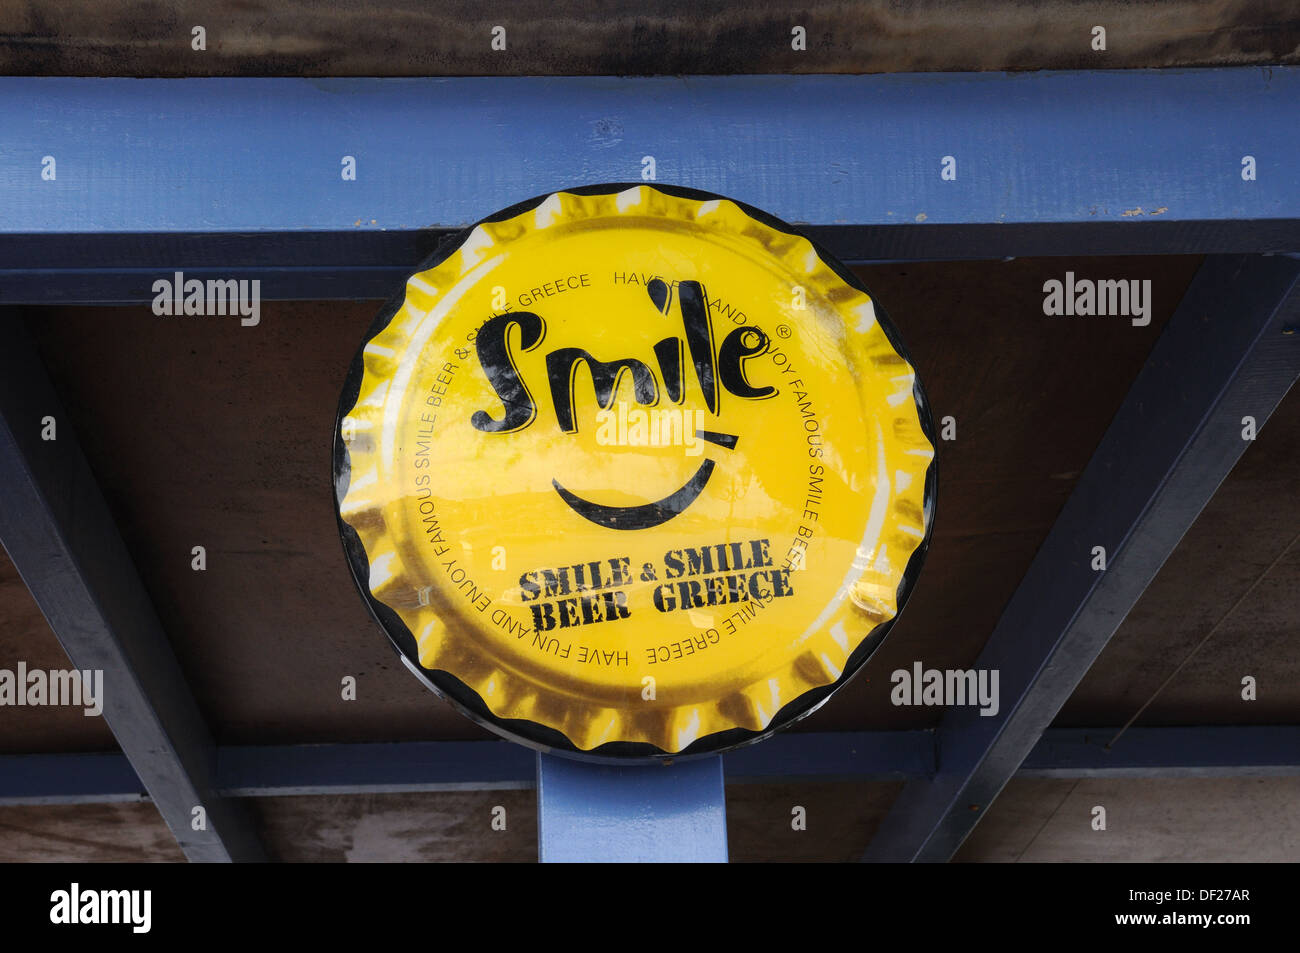 Sourire sourire bière grec publicité pour la bière dans la forme d'une bouteille haut Halki Chalki Grèce Banque D'Images